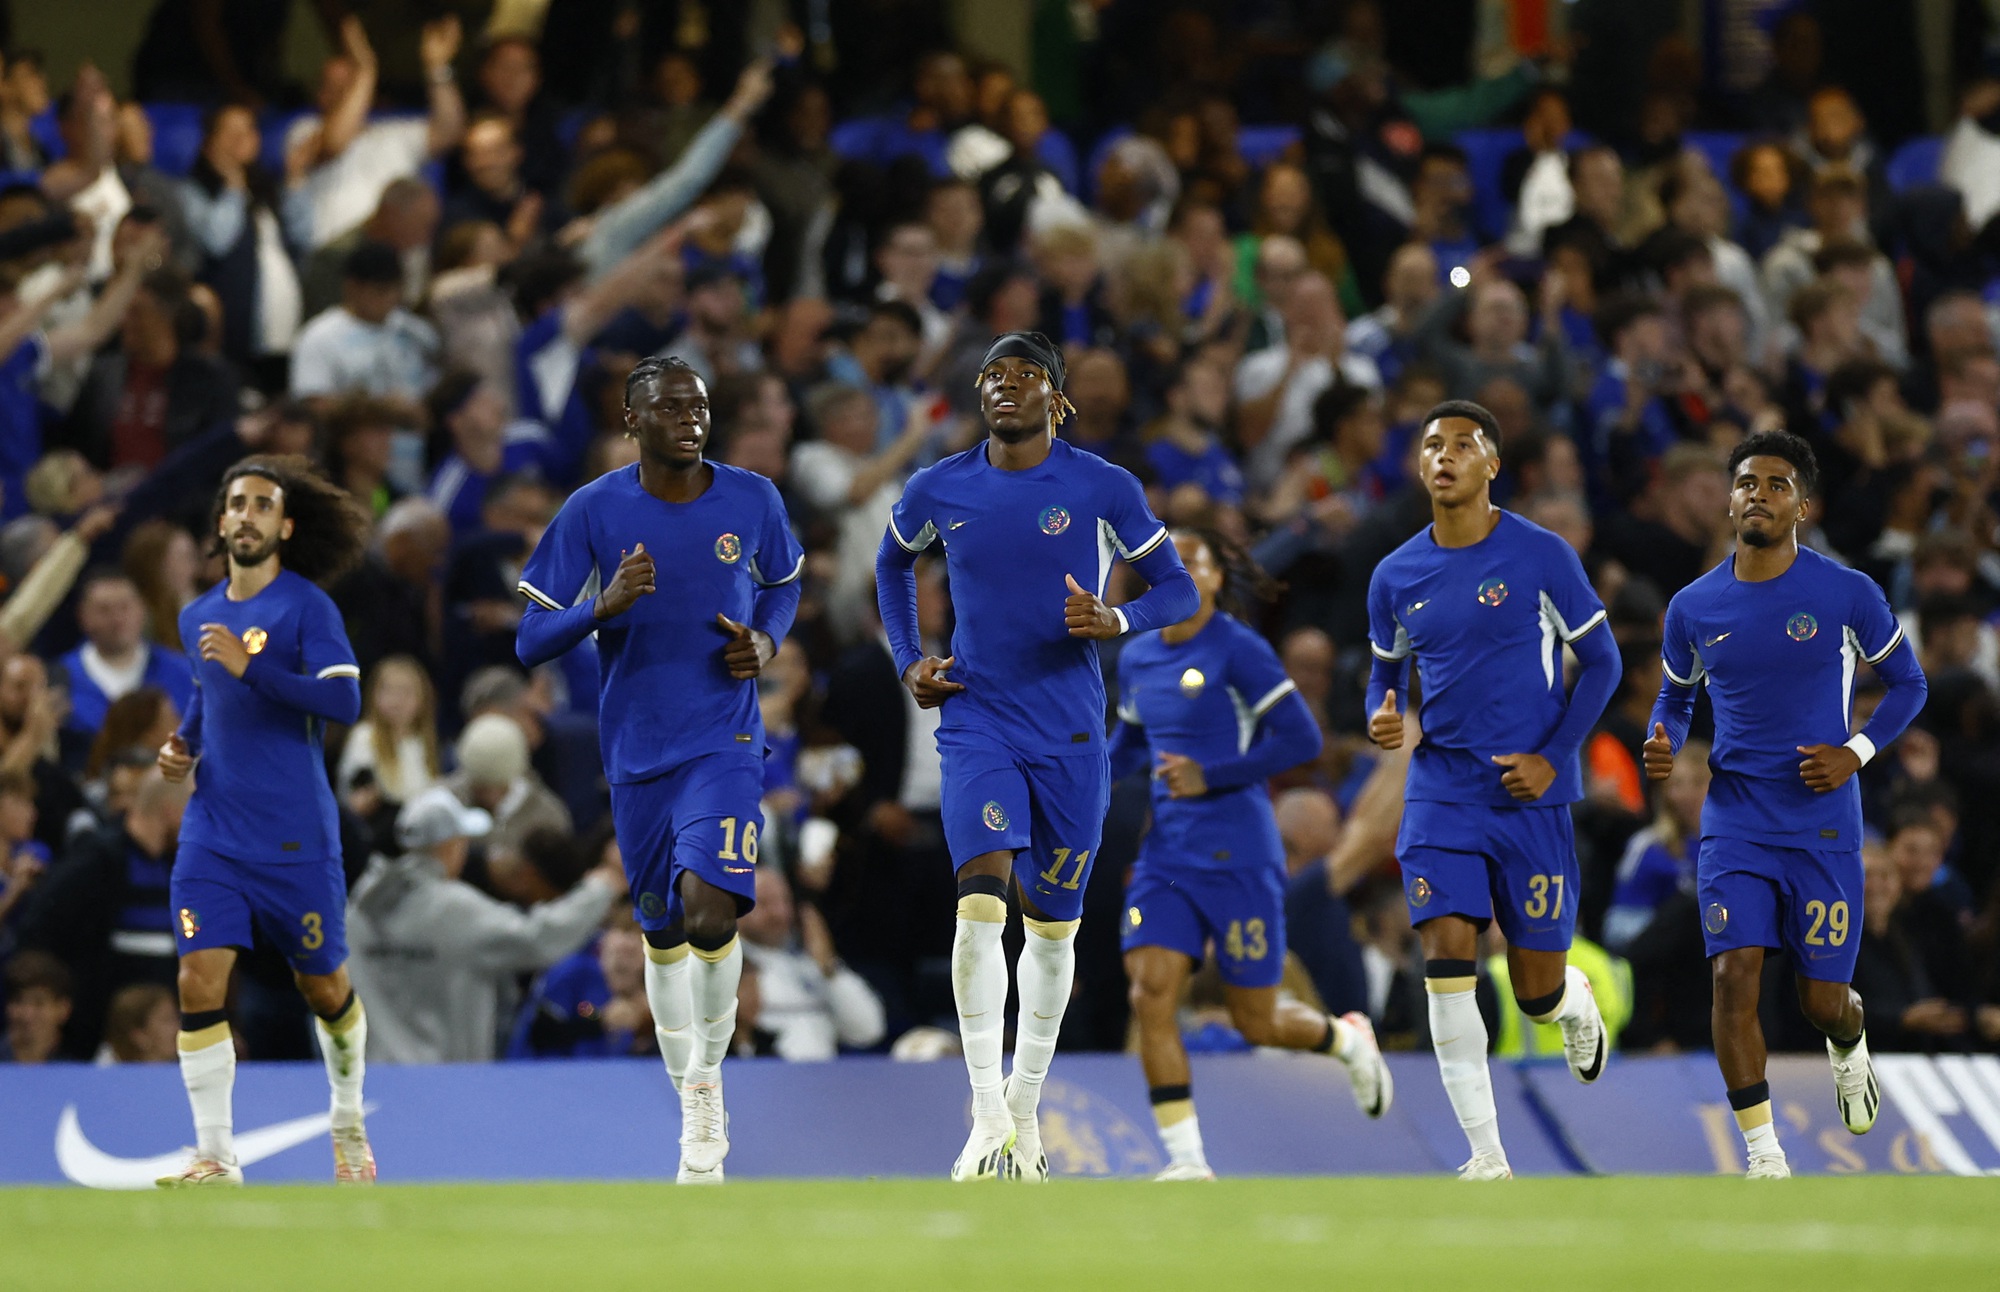 Sao 107 triệu bảng lập công, Chelsea thắng chật vật đội bóng Hạng tư tại League Cup - Ảnh 3.